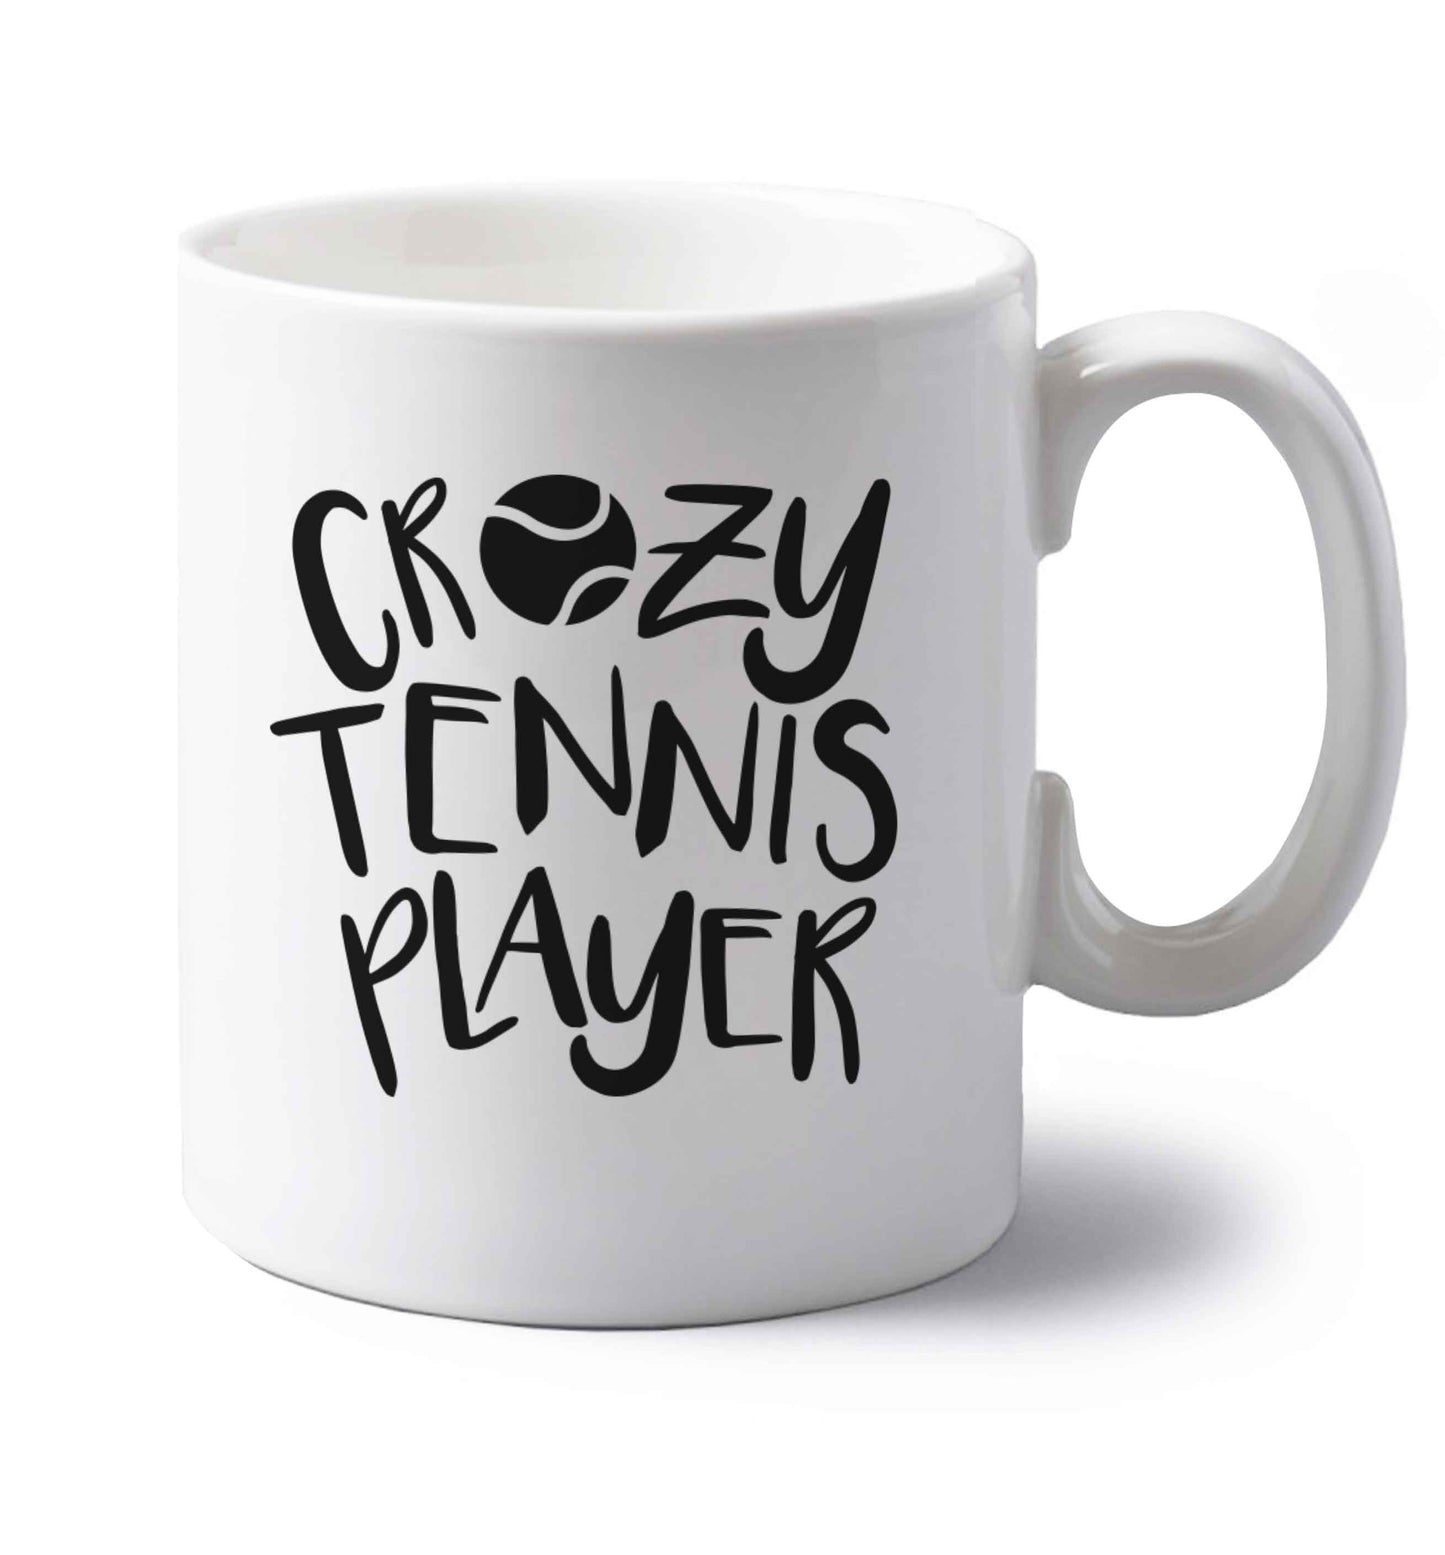 Crazy tennis player left handed white ceramic mug 